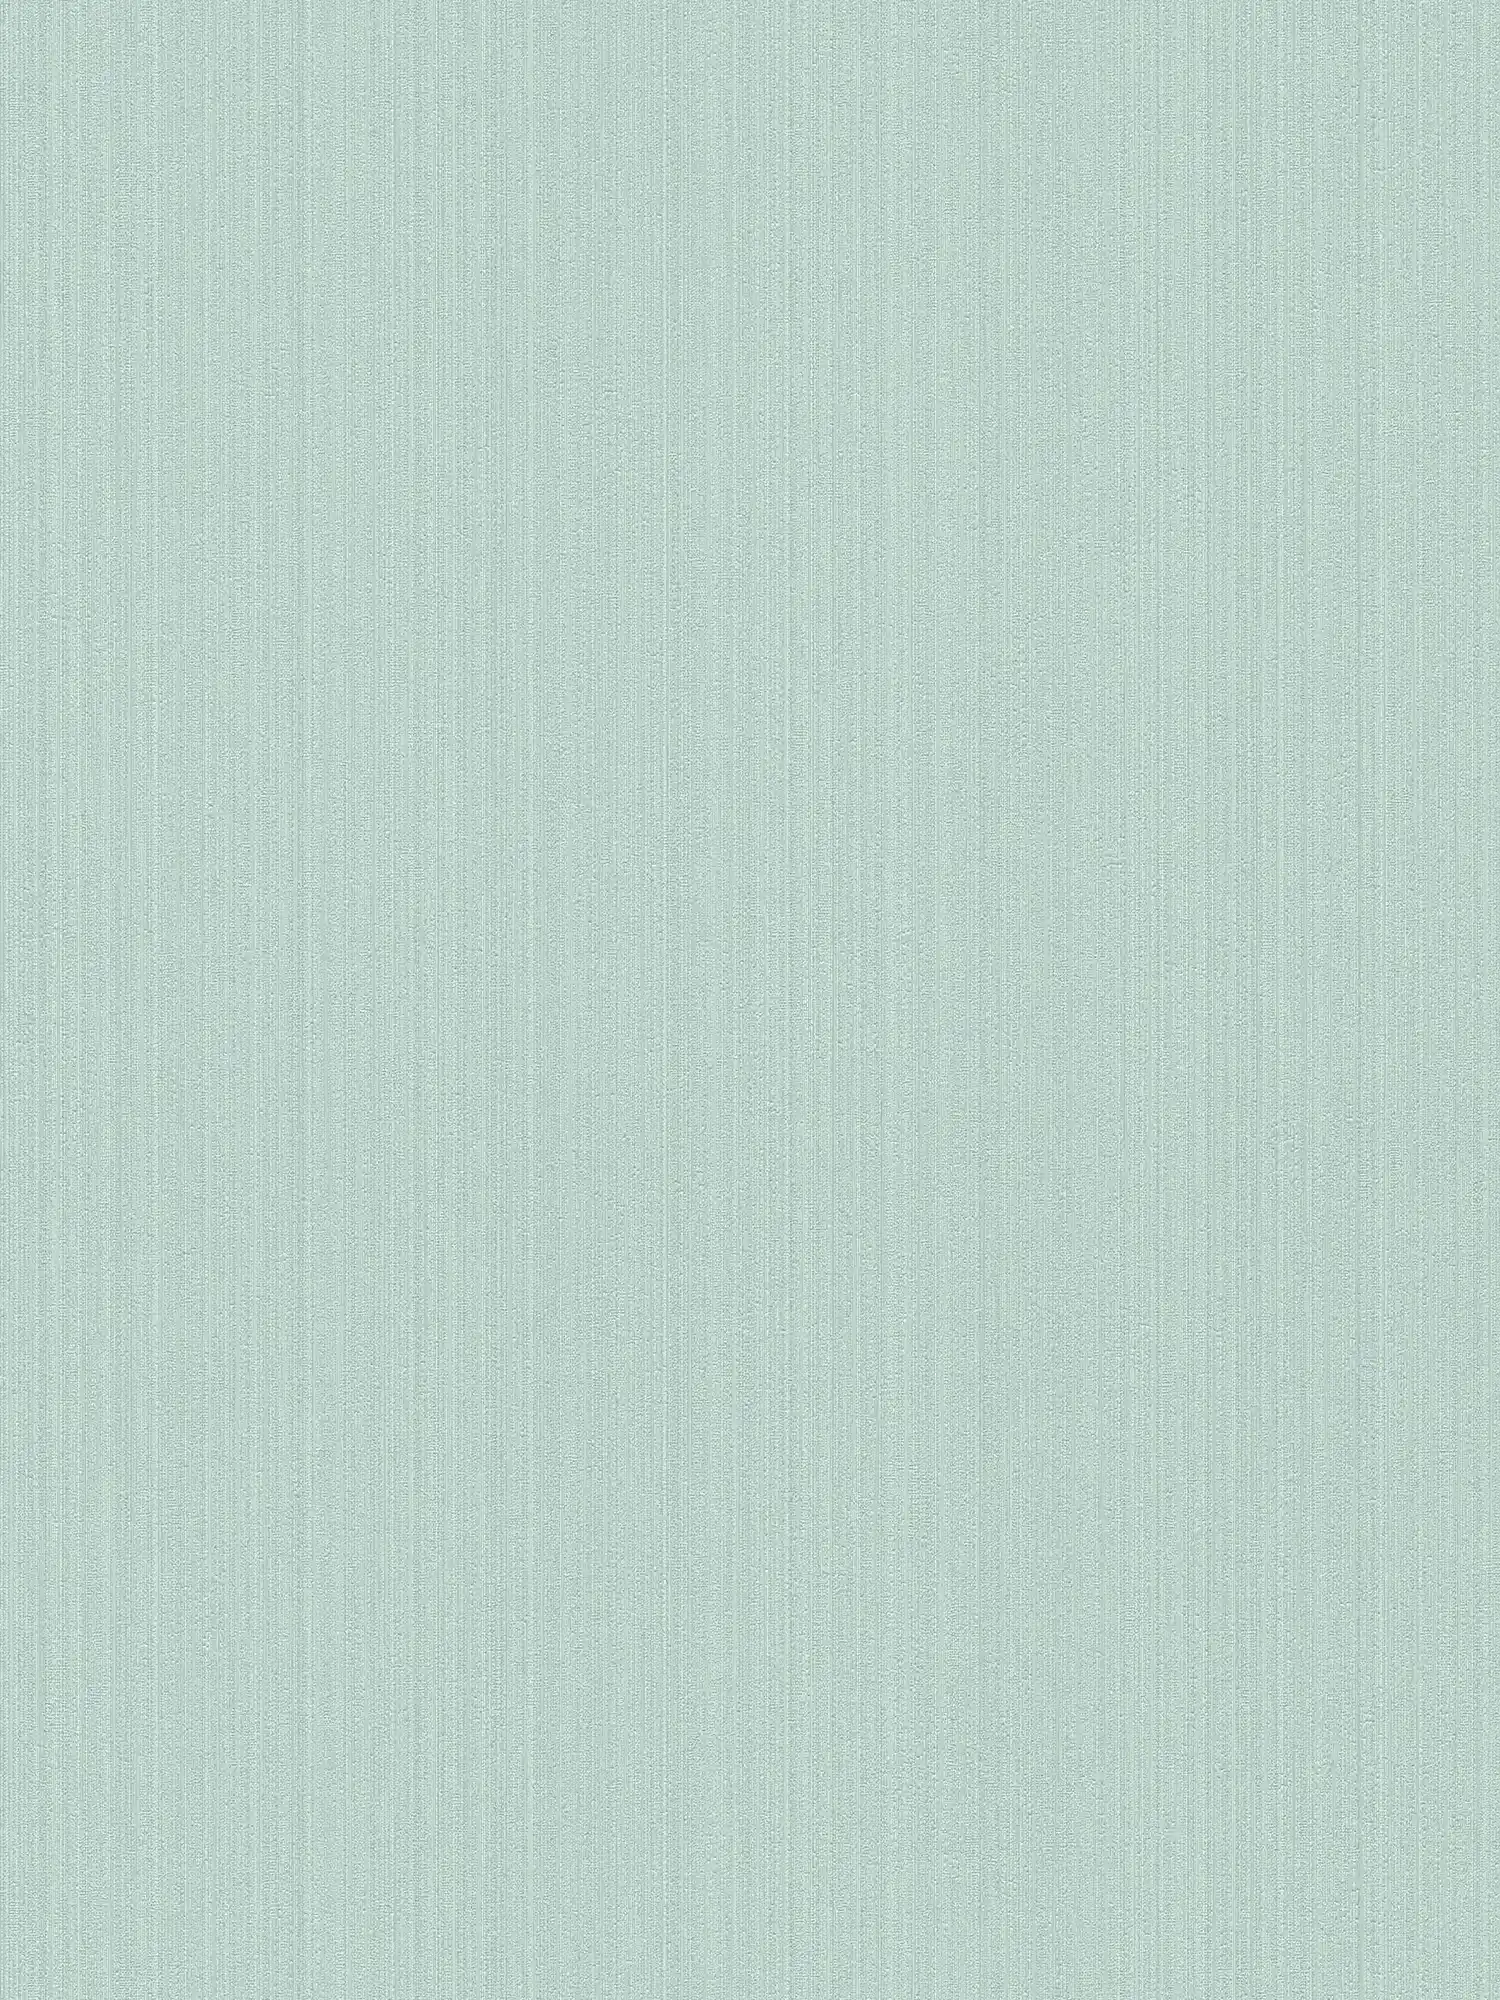 wallpaper mint green plain, silk matte with texture pattern
